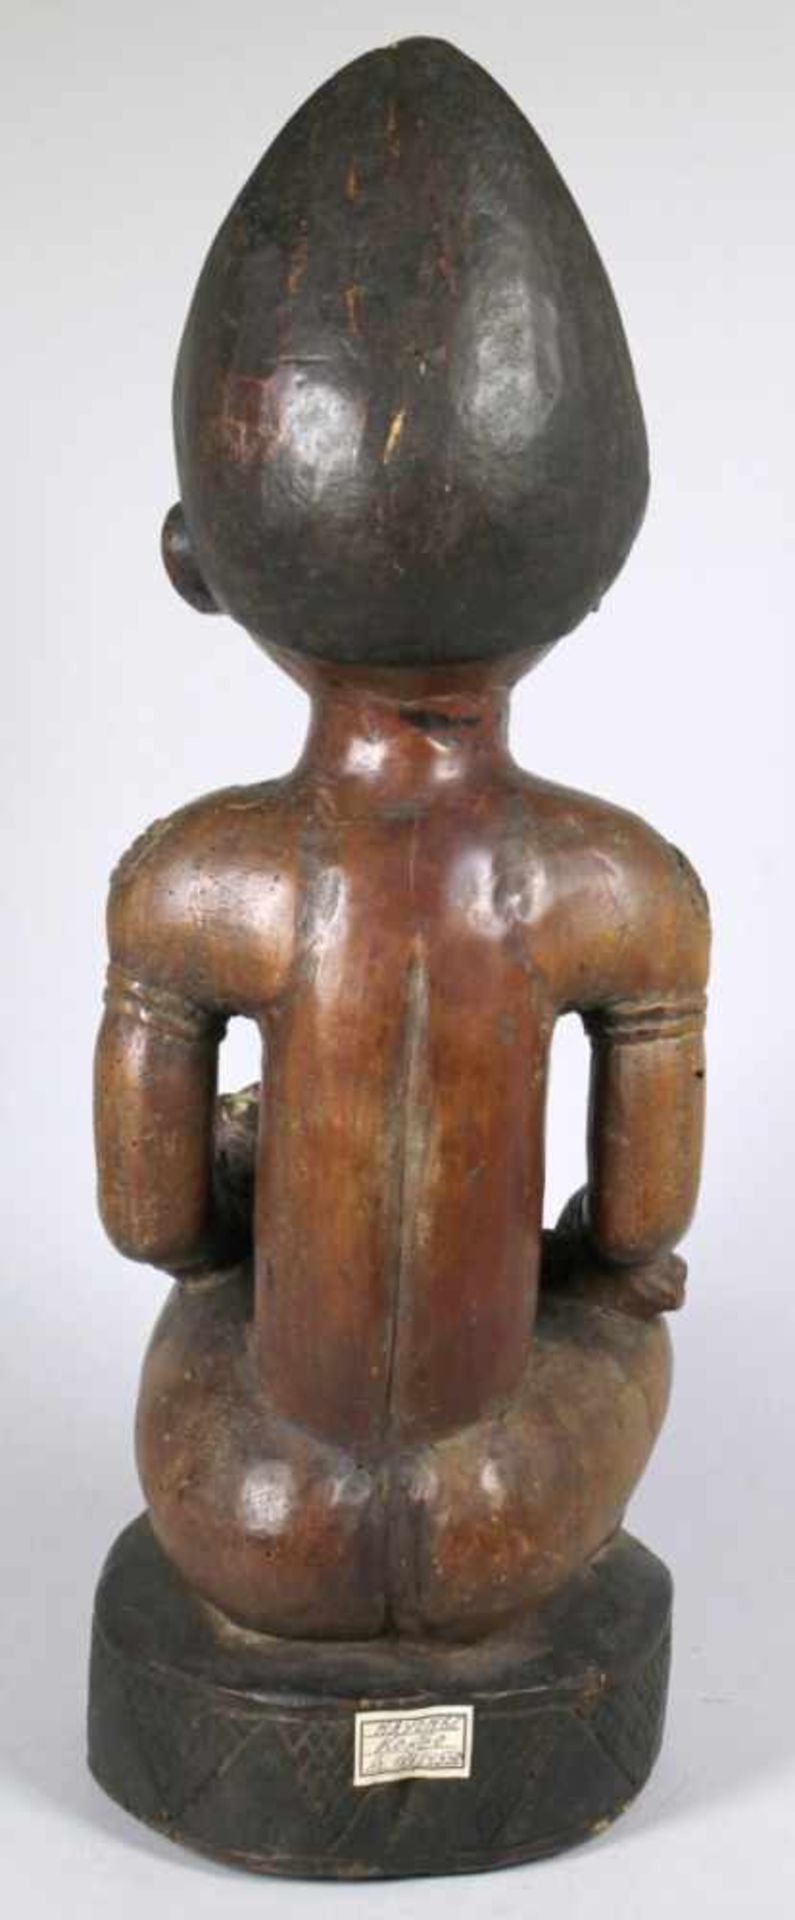 Mutter-Figur, Yombe, Kongo, auf Ovalsockel im Schneidersitz hockende, plastische,weibliche - Bild 3 aus 3